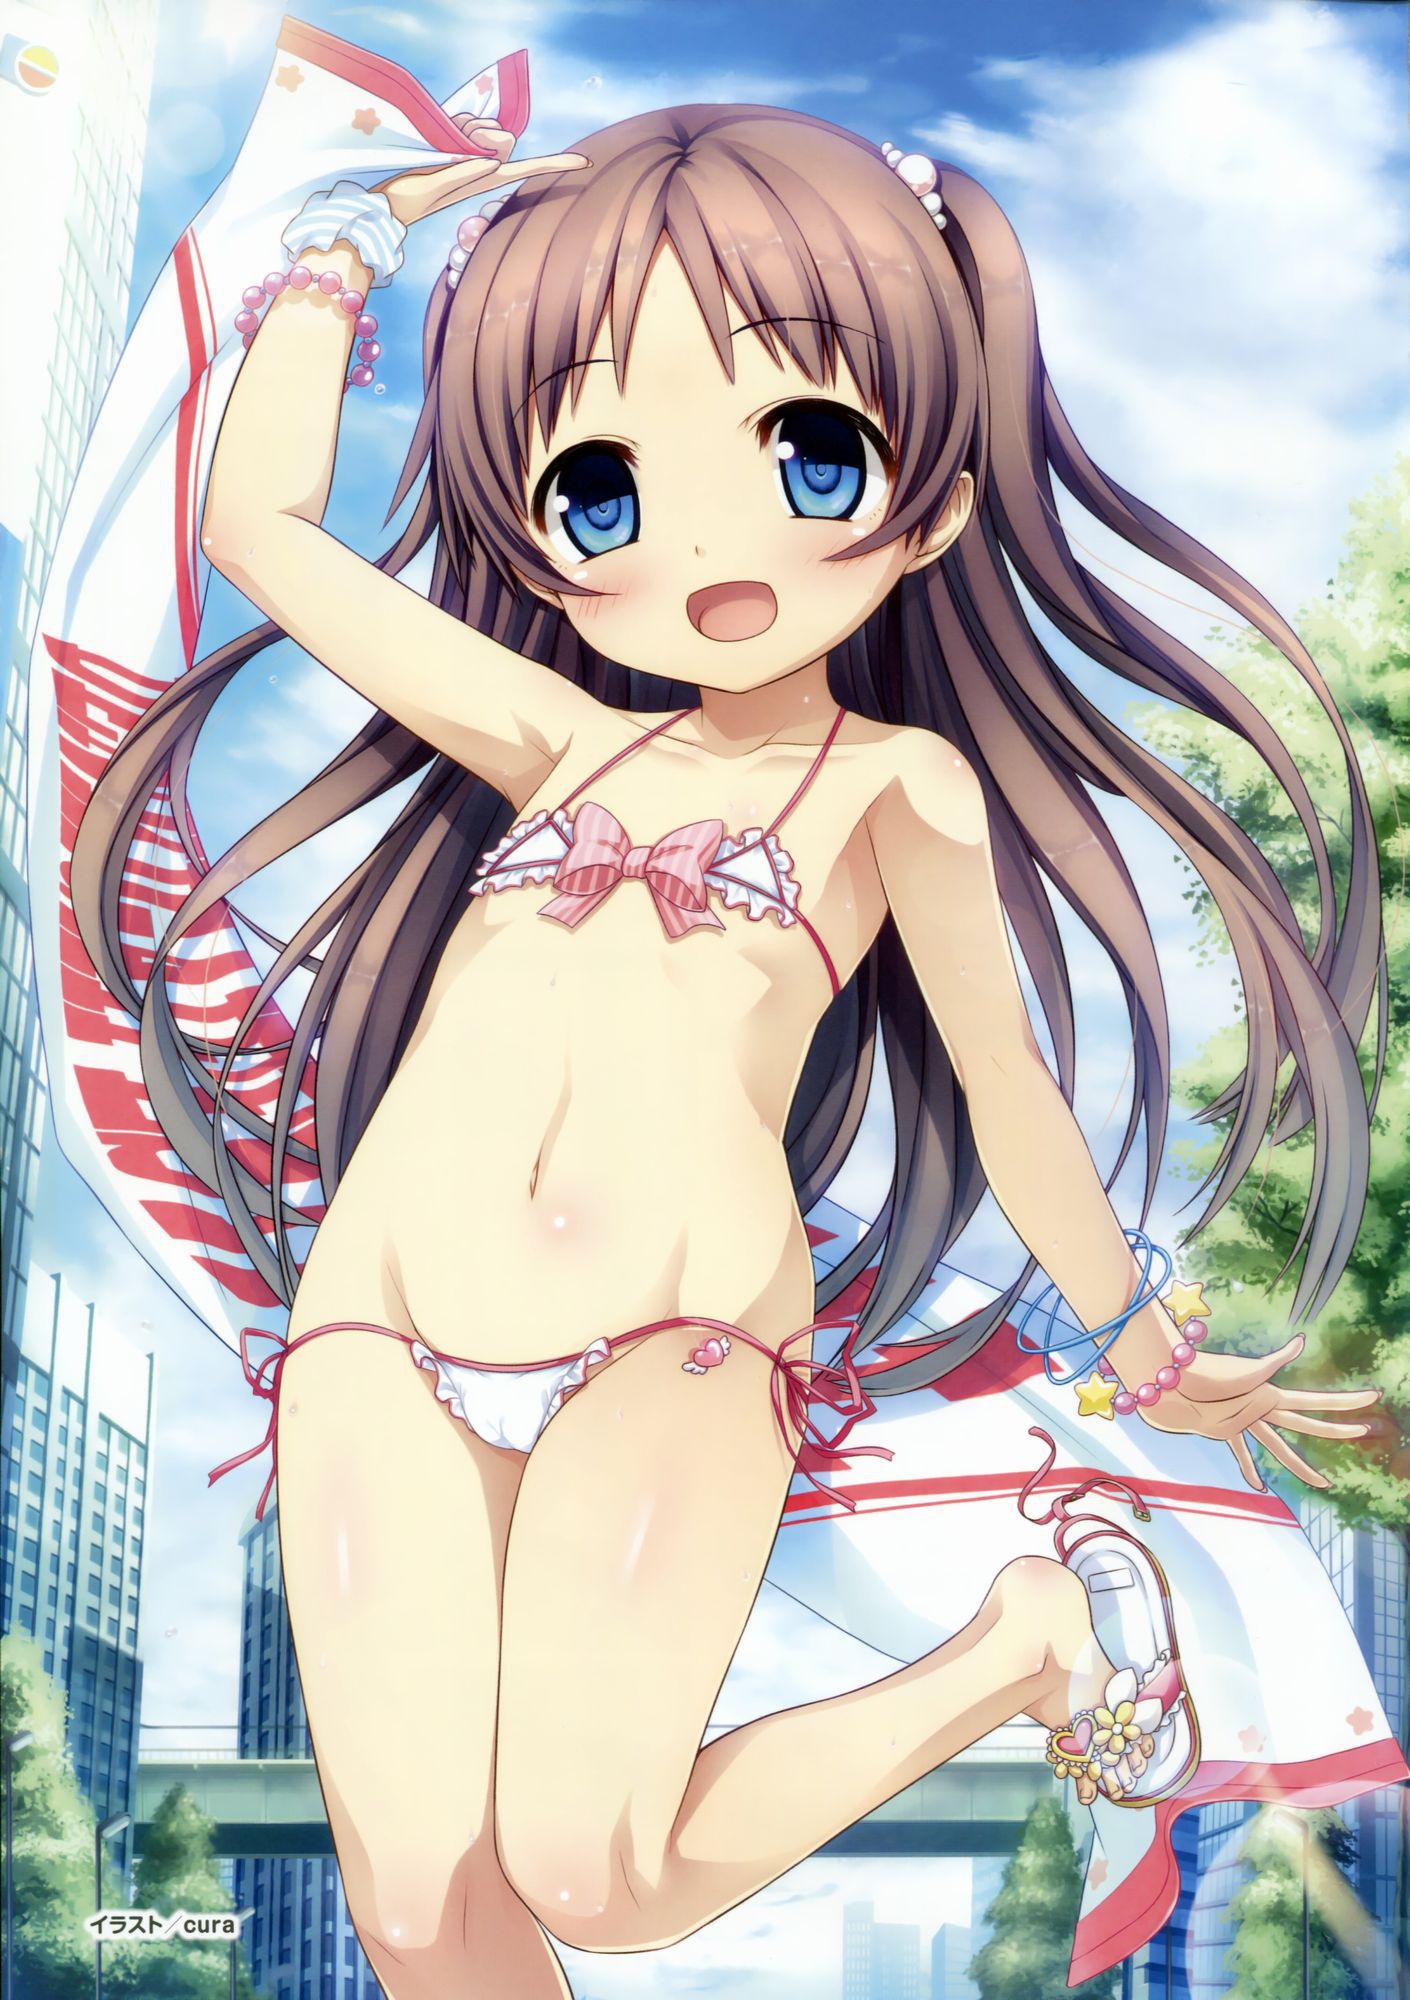 Porori Chikuni! Secondary erotic picture of a girl in a micro bikini wwww part3 2